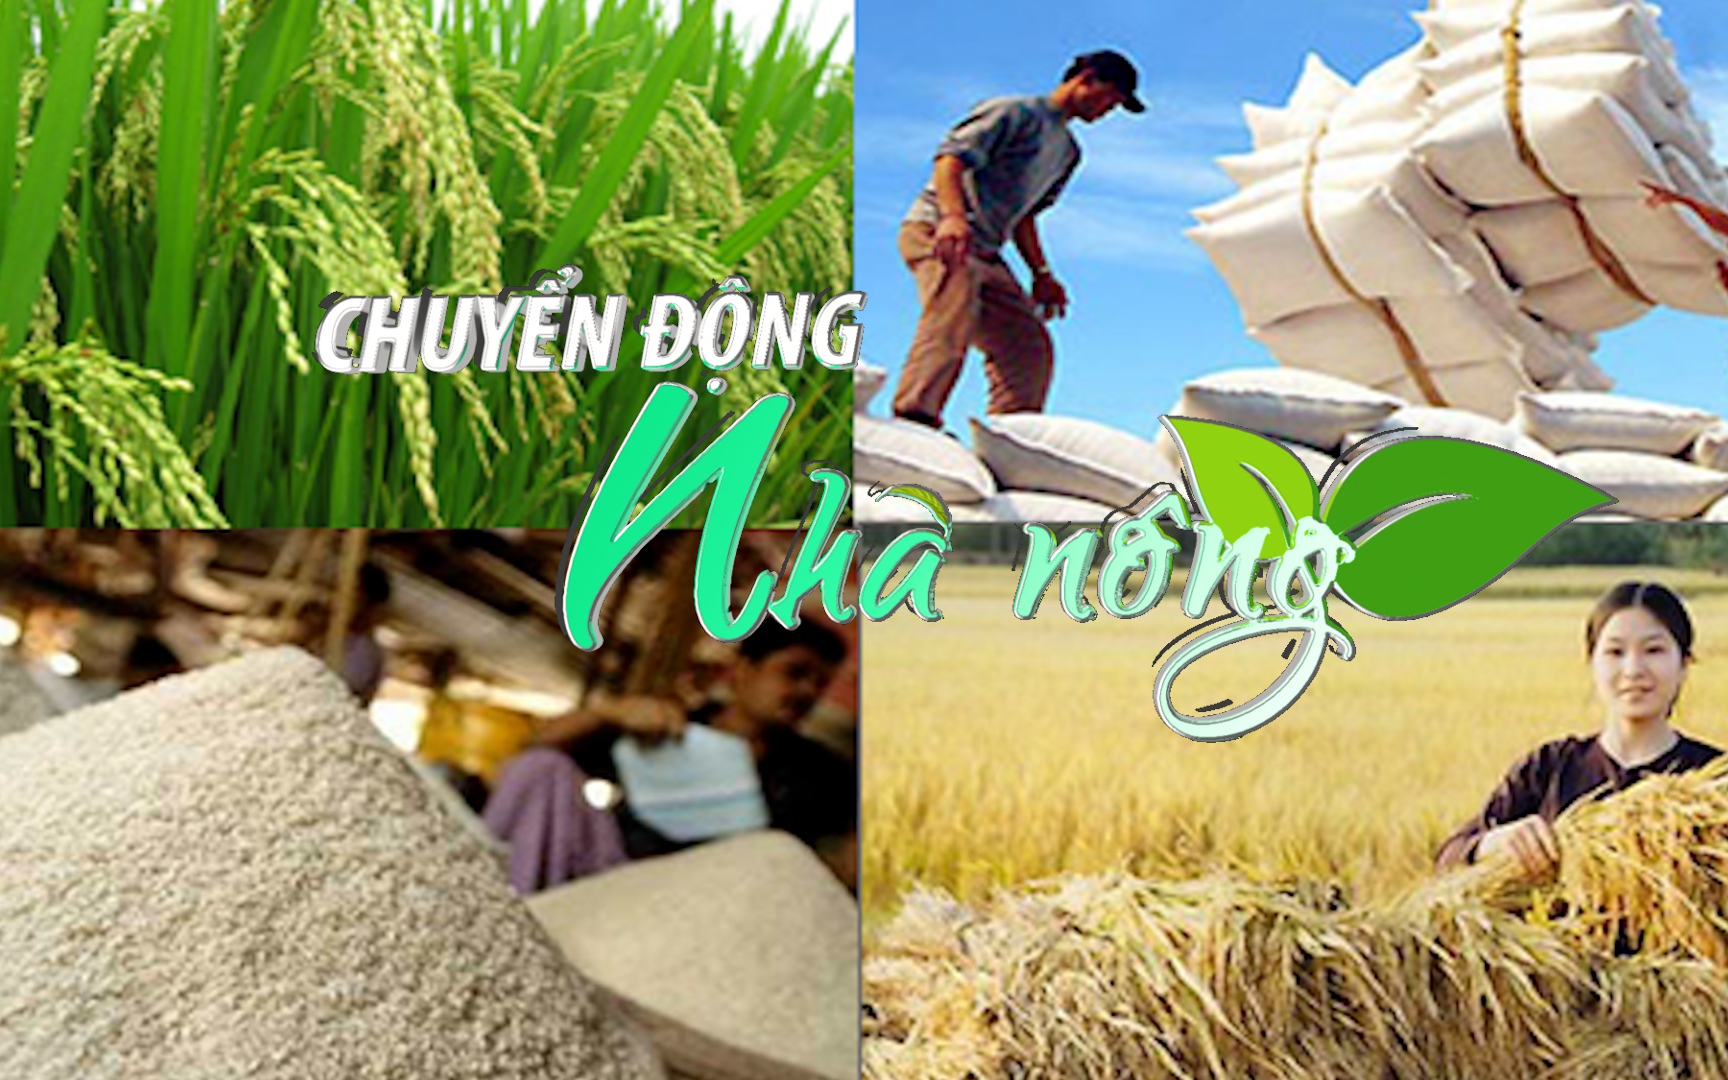 Chuyển động Nhà nông 14/12: Việt Nam sẵn sàng hợp tác với các quốc gia để cung cấp lúa gạo